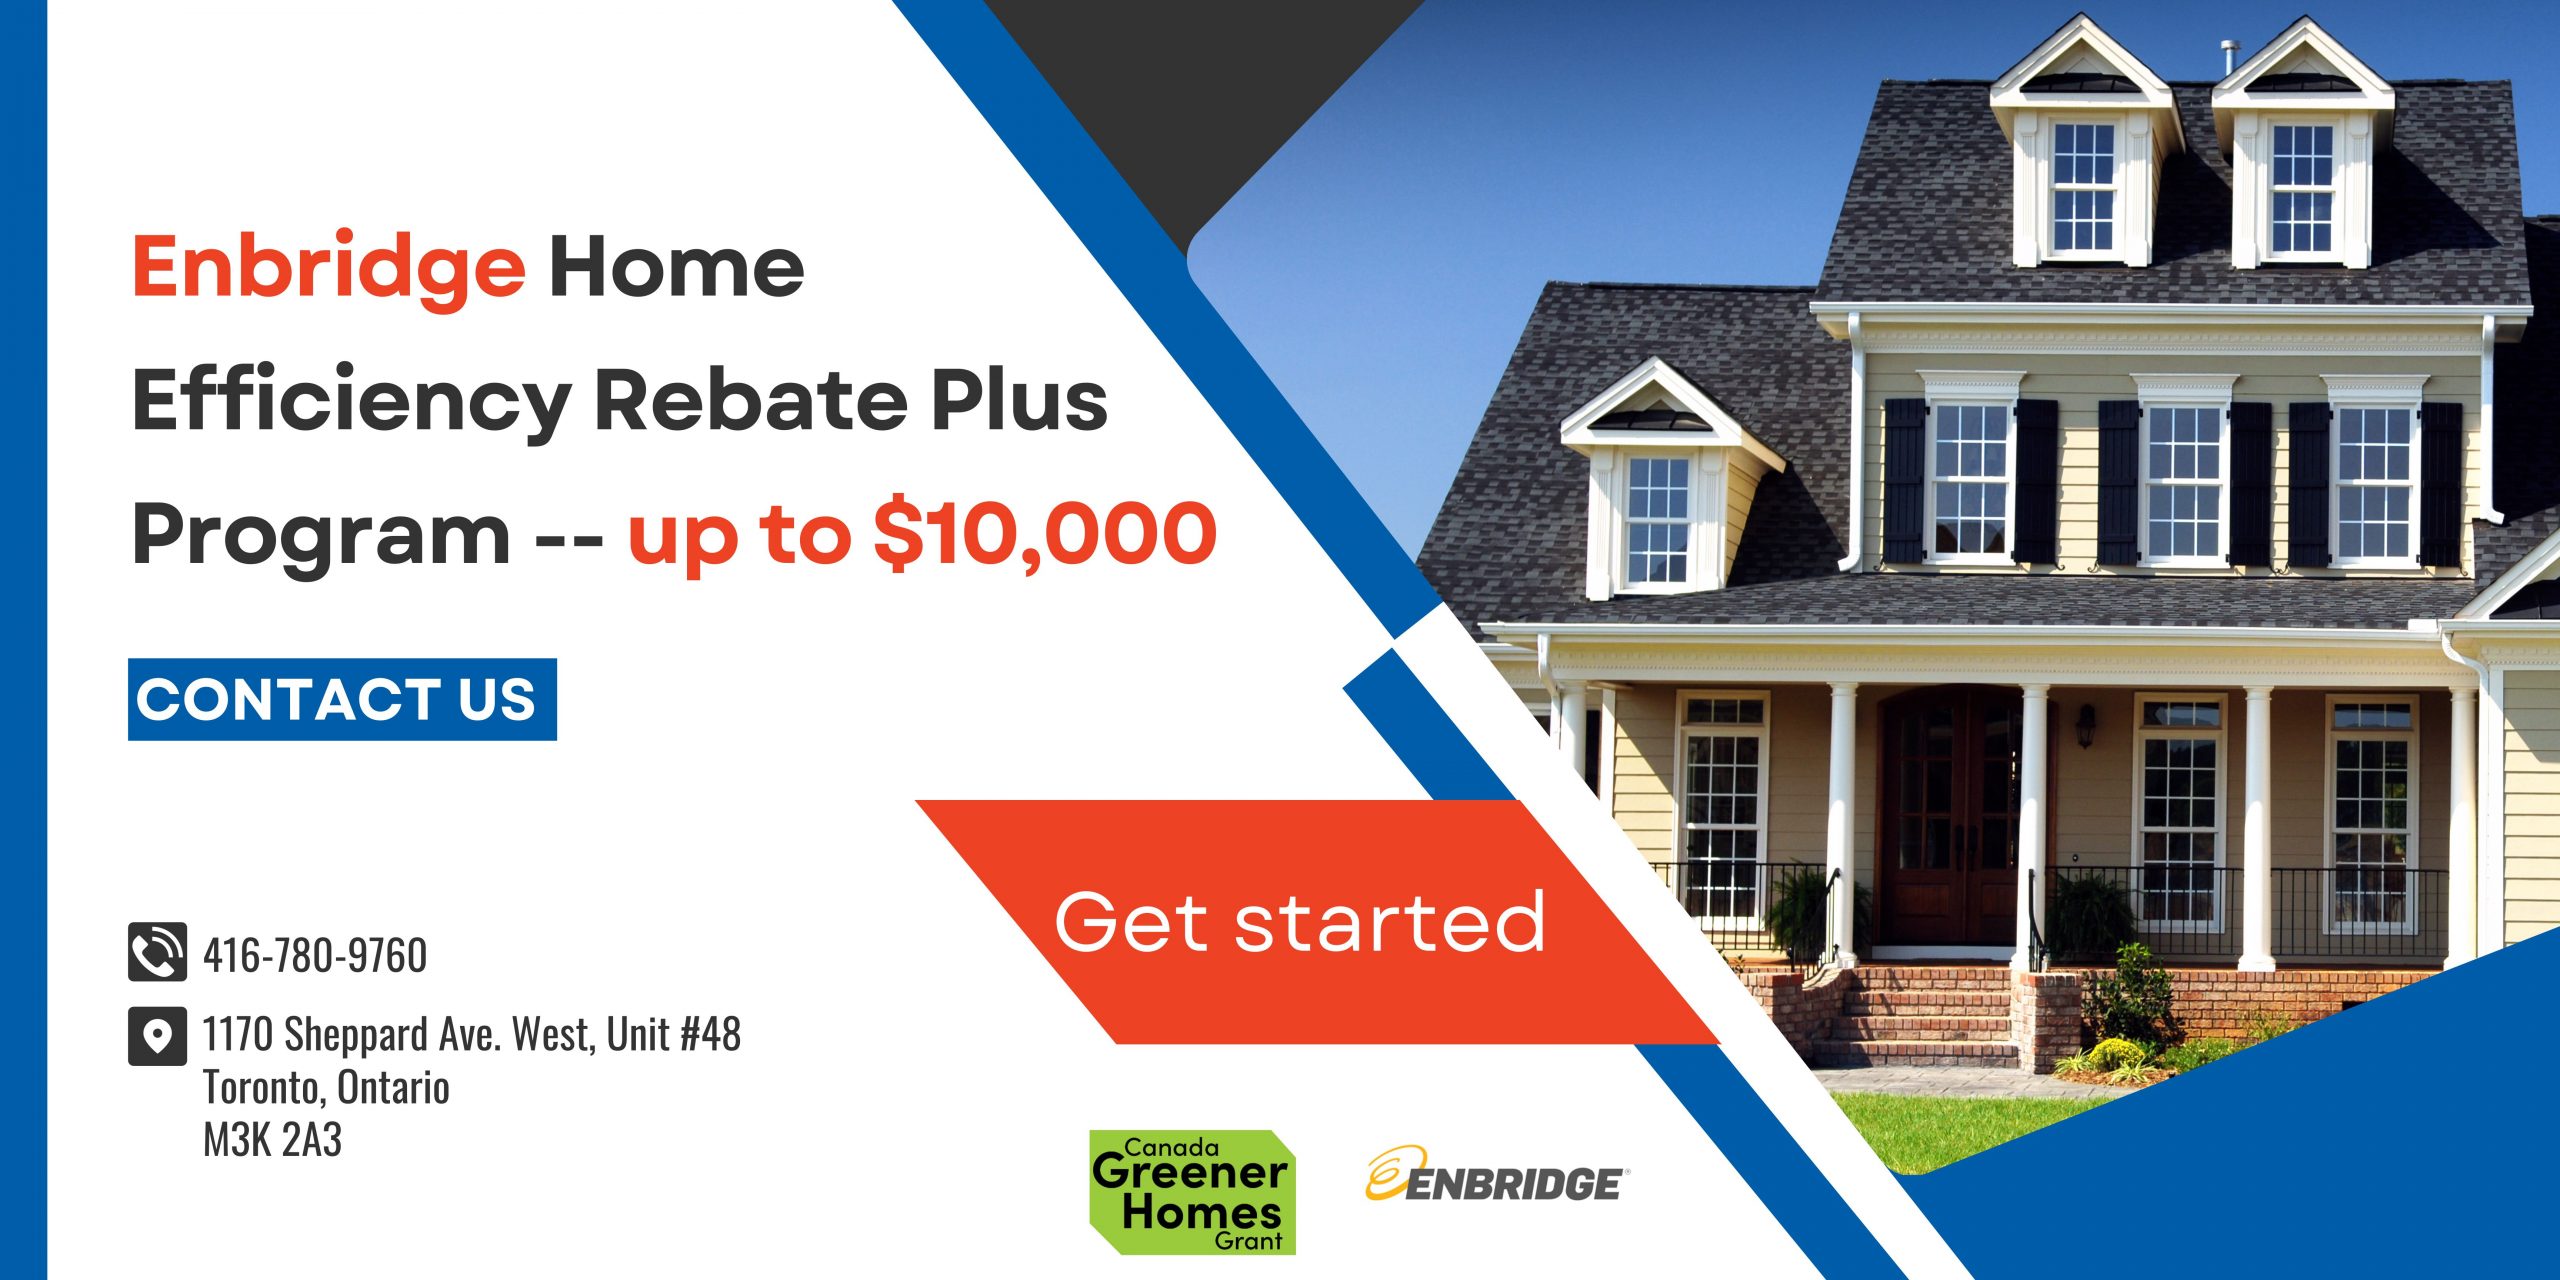 Enbridge Home Efficiency Rebate Plus Program -- up to $10,000